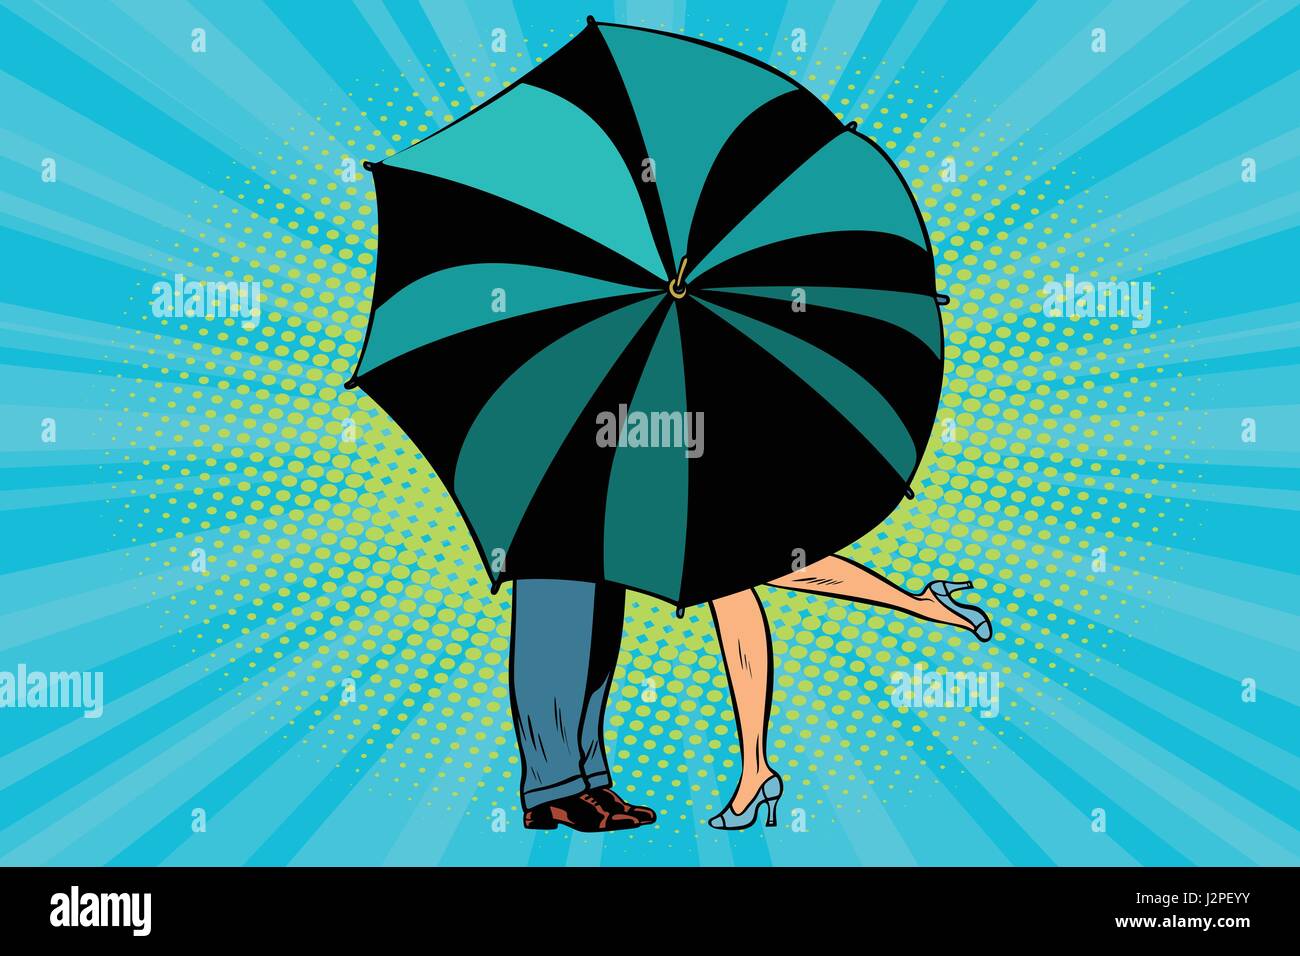 Man and woman kissing behind umbrella Stock Vector